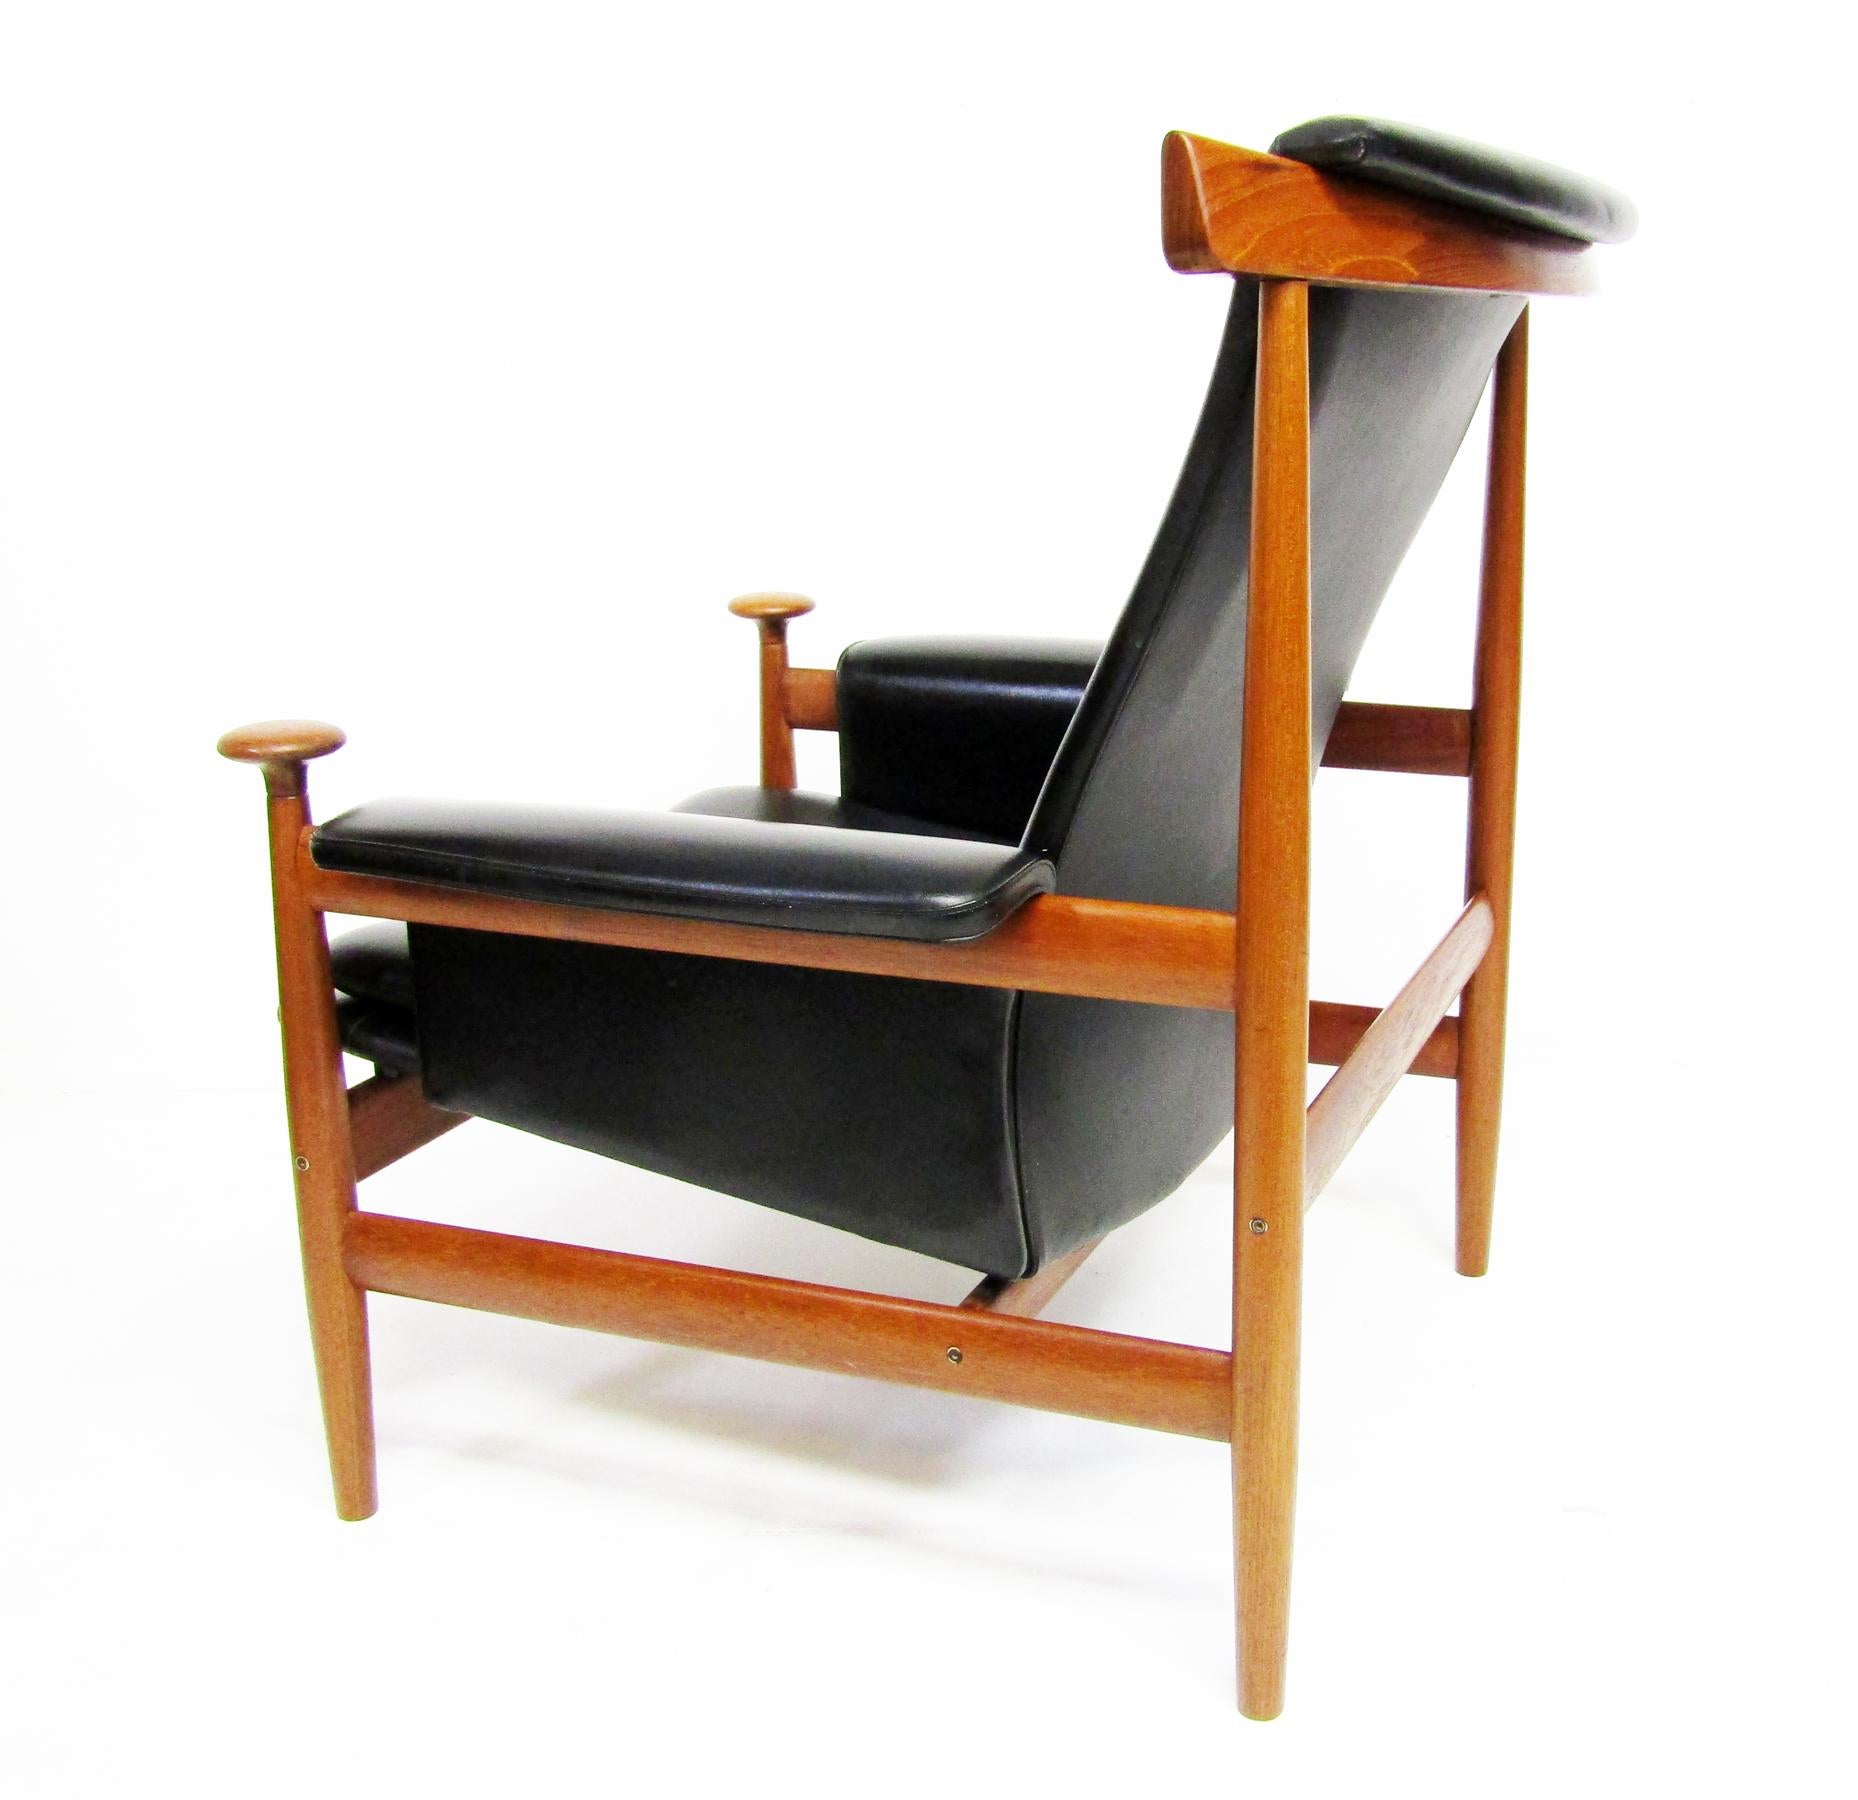 1960s Danish Bwana Chair & Ottoman By Finn Juhl In Teak & Skai For Sale 8